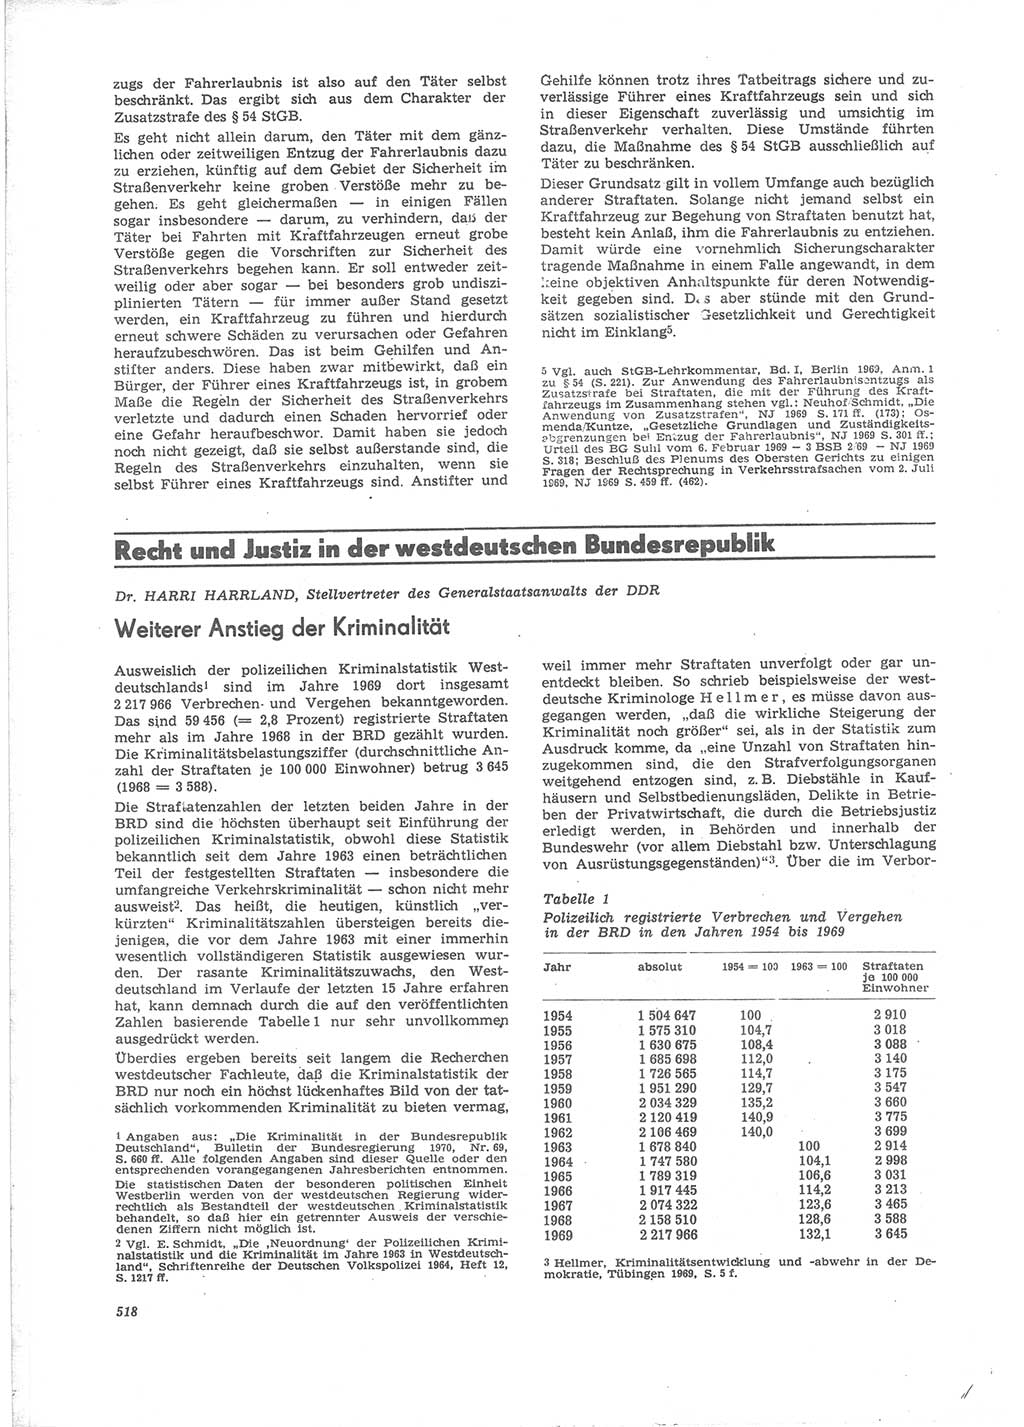 Neue Justiz (NJ), Zeitschrift für Recht und Rechtswissenschaft [Deutsche Demokratische Republik (DDR)], 24. Jahrgang 1970, Seite 518 (NJ DDR 1970, S. 518)